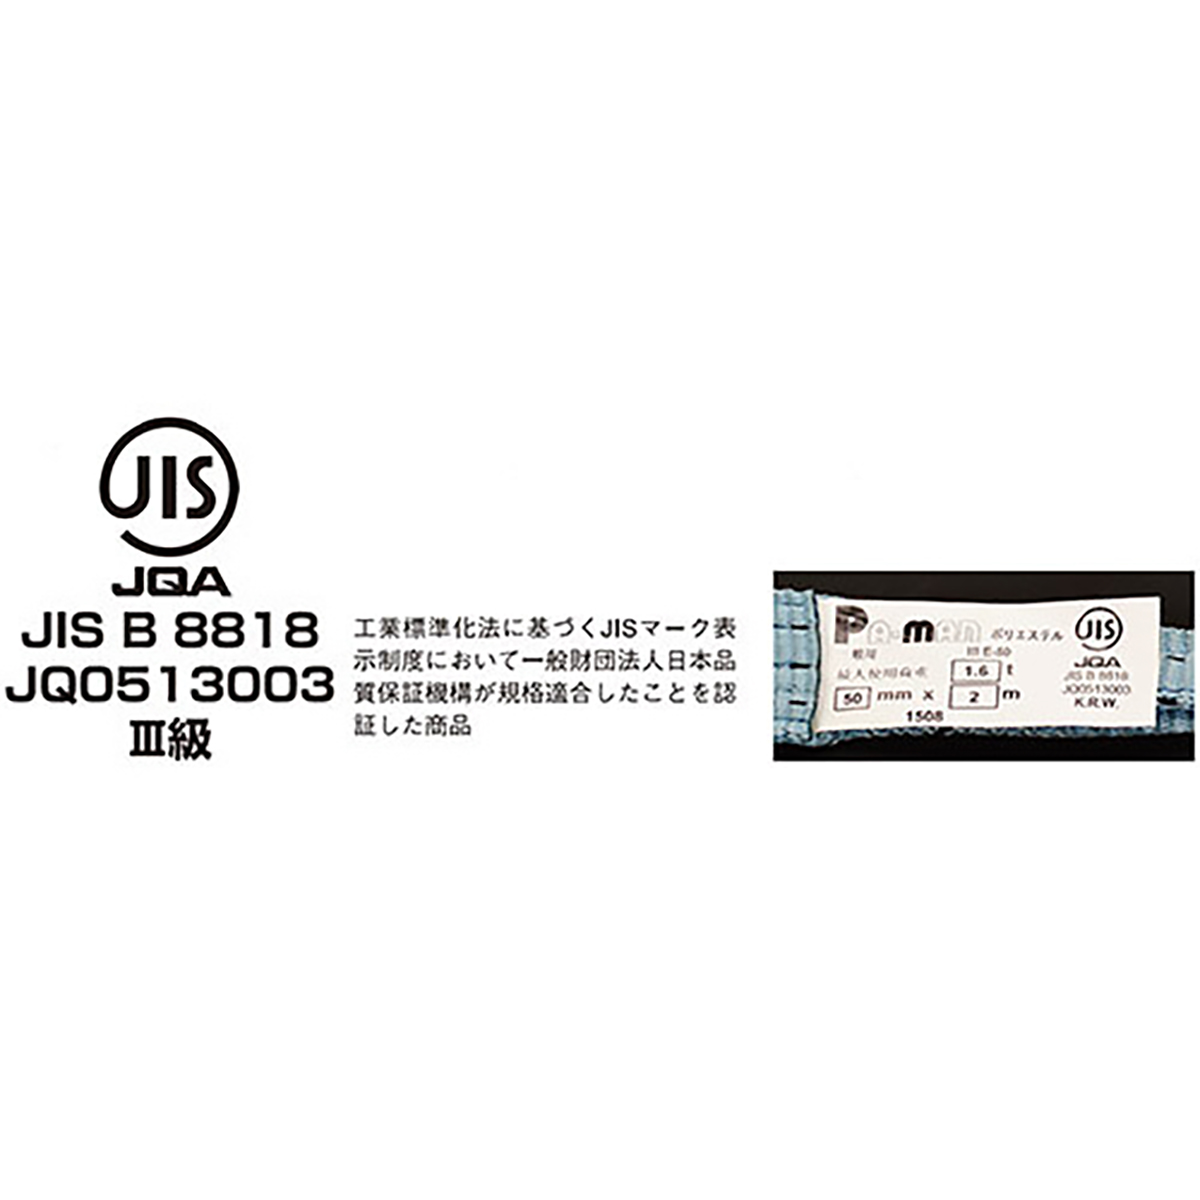 ポリベルトスリング JIS III級 ソフト面付 巾35mm 5.5m 1本